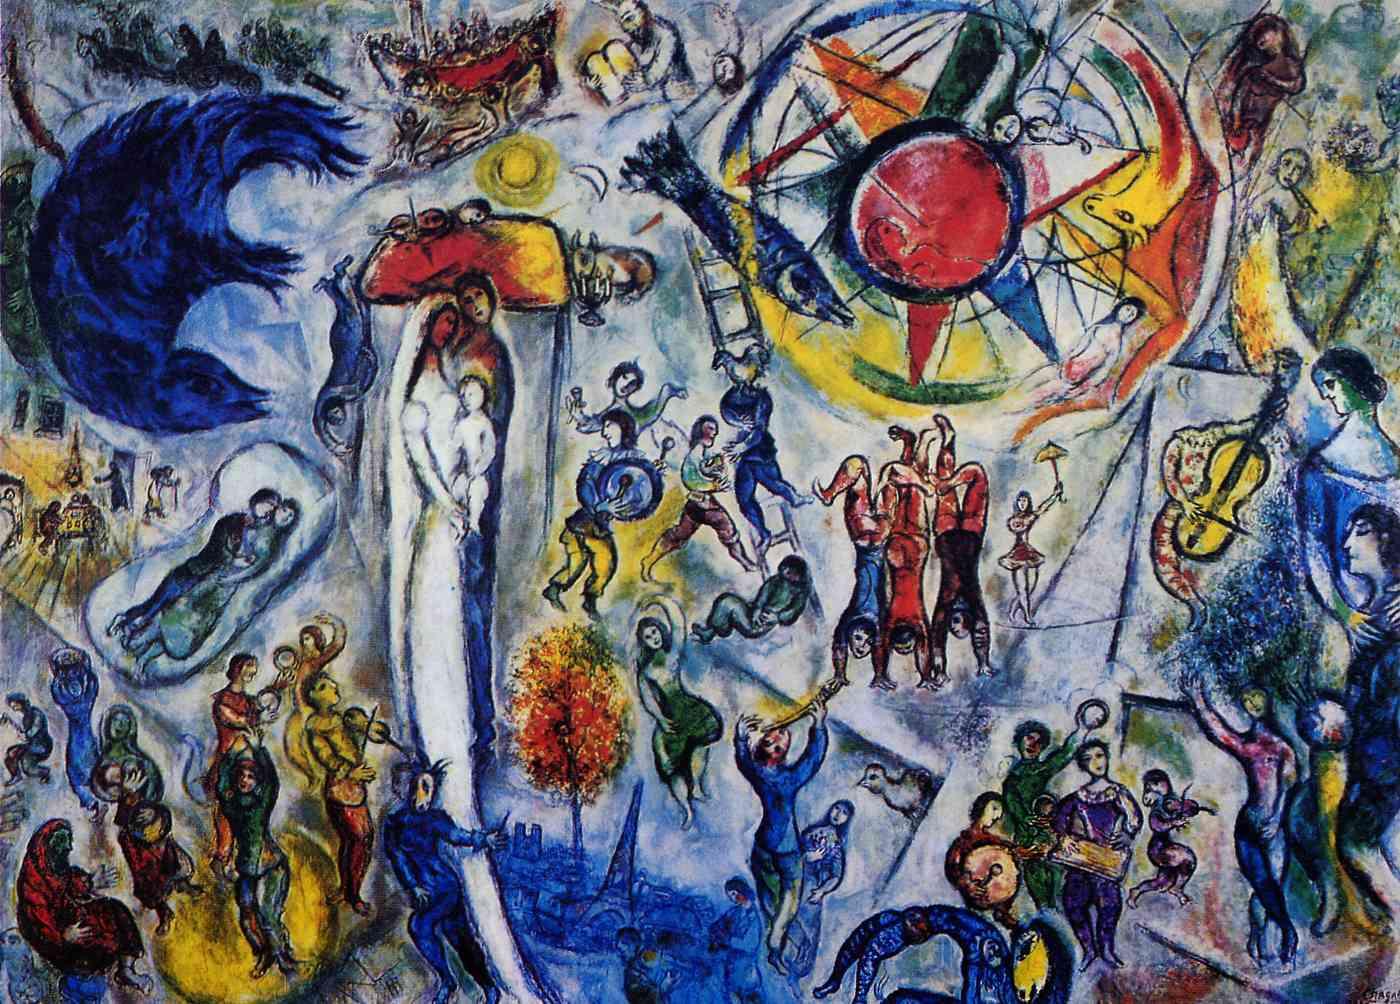 Media Name: Marc Chagall, La Vie, 1964, Huile sur toile, 296 x 406 cm © Archives Fondation Maeght, Adagp Paris 2014